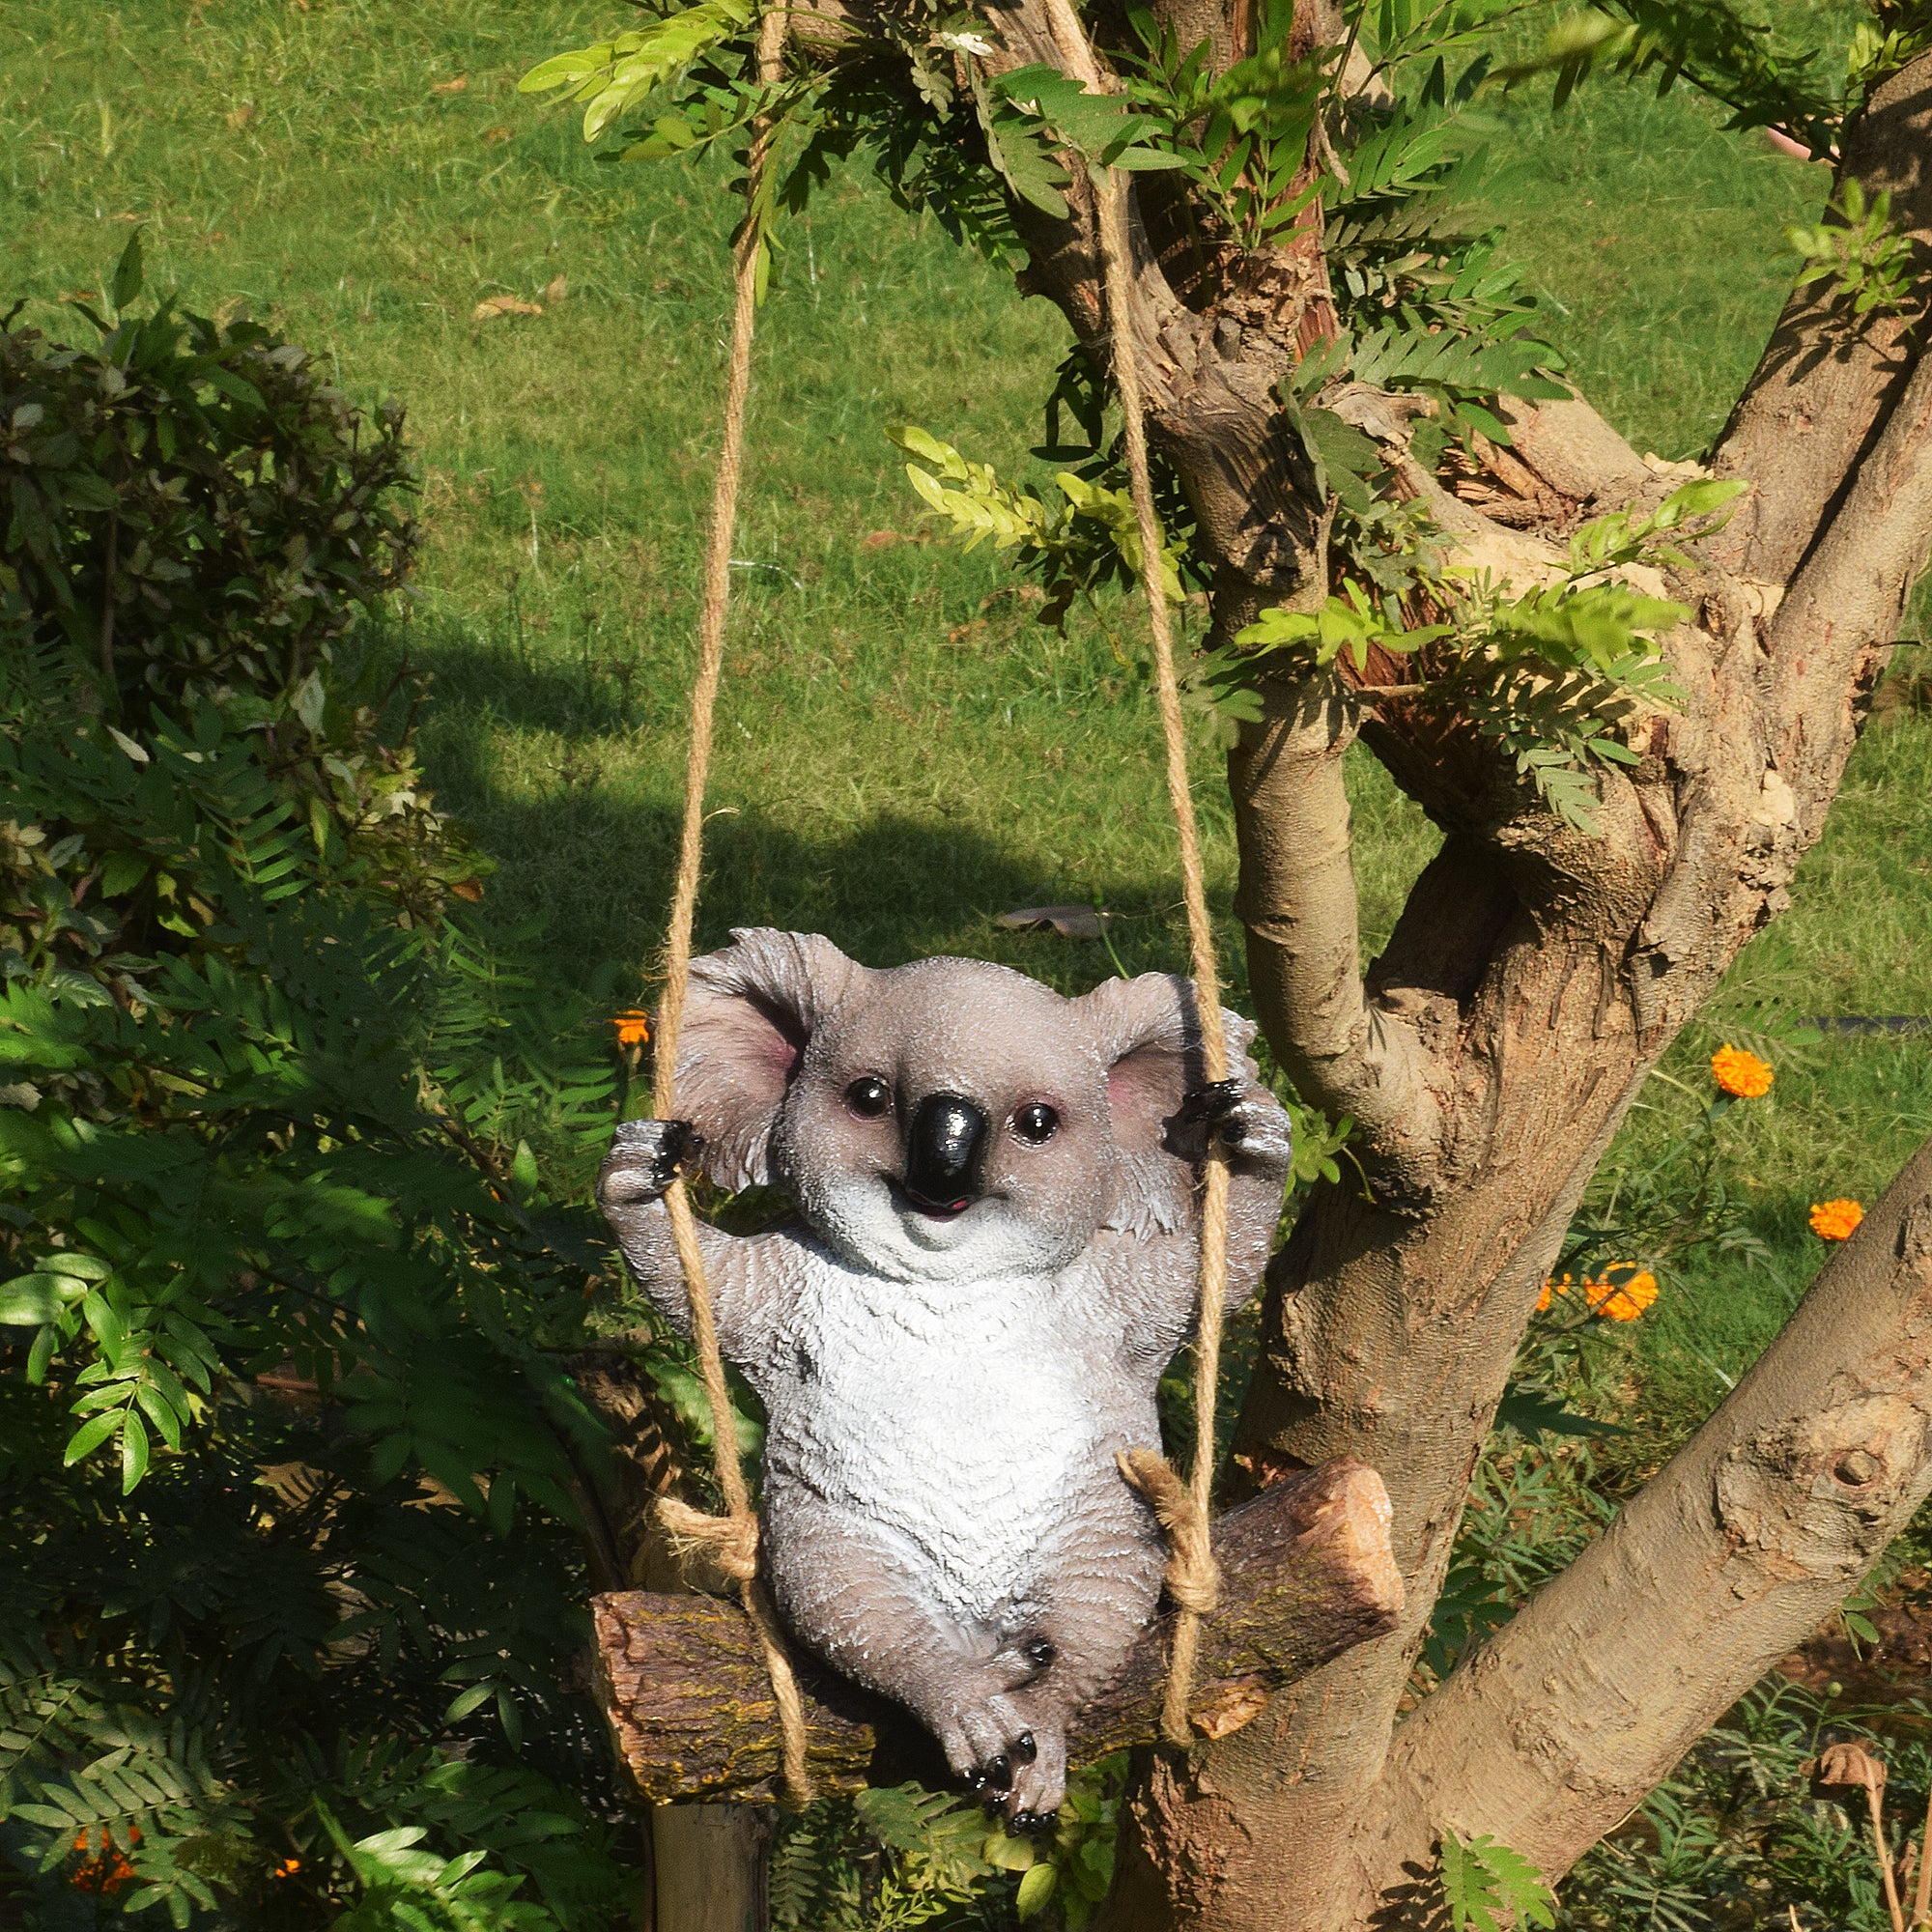 Koala on Swing hanging Decor - myBageecha